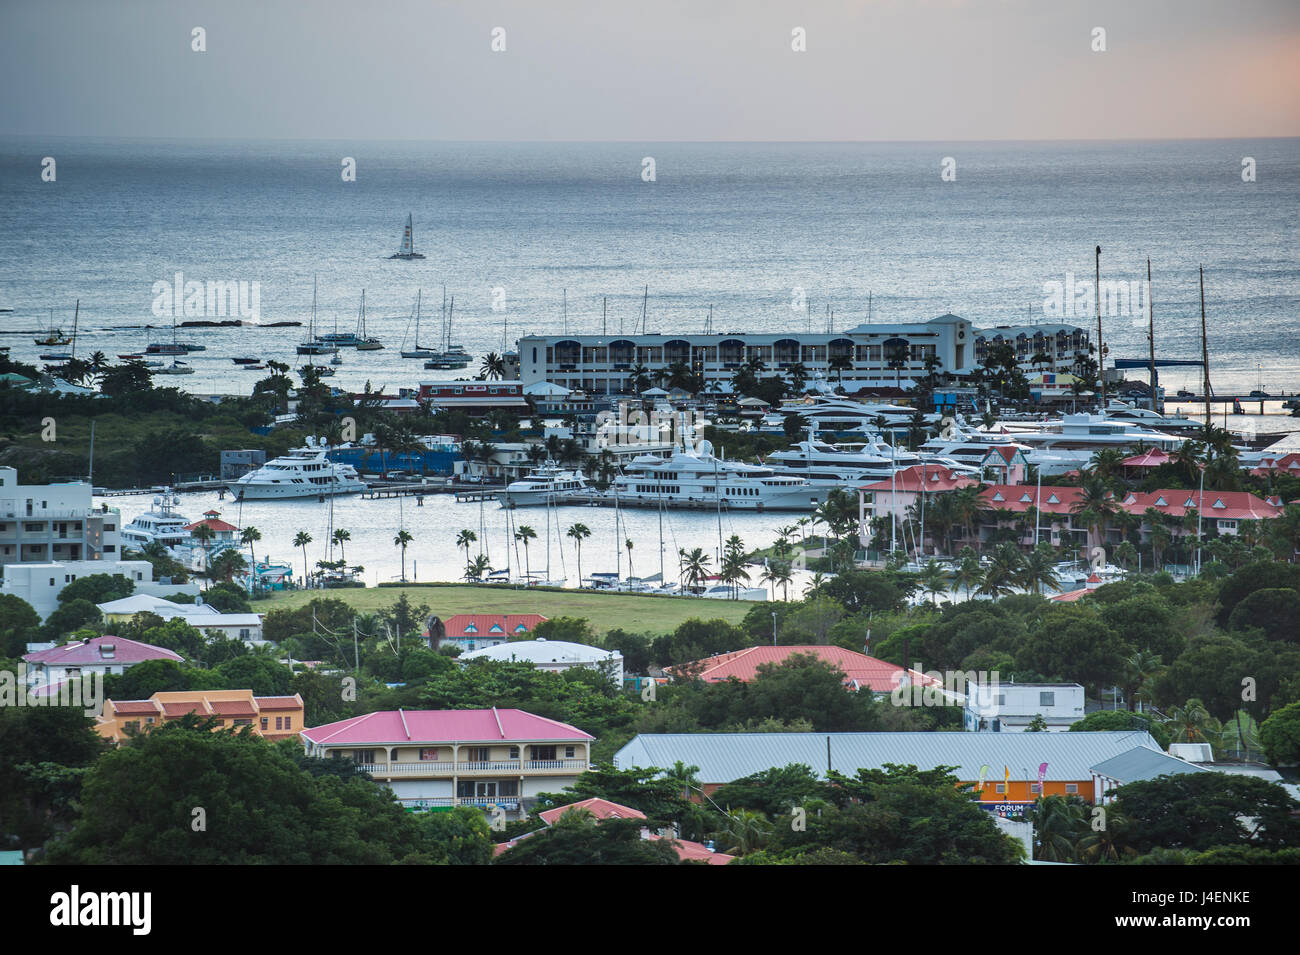 Vue sur le port de Saint Martin, Sint Maarten, Antilles, Caraïbes, Amérique Centrale Banque D'Images